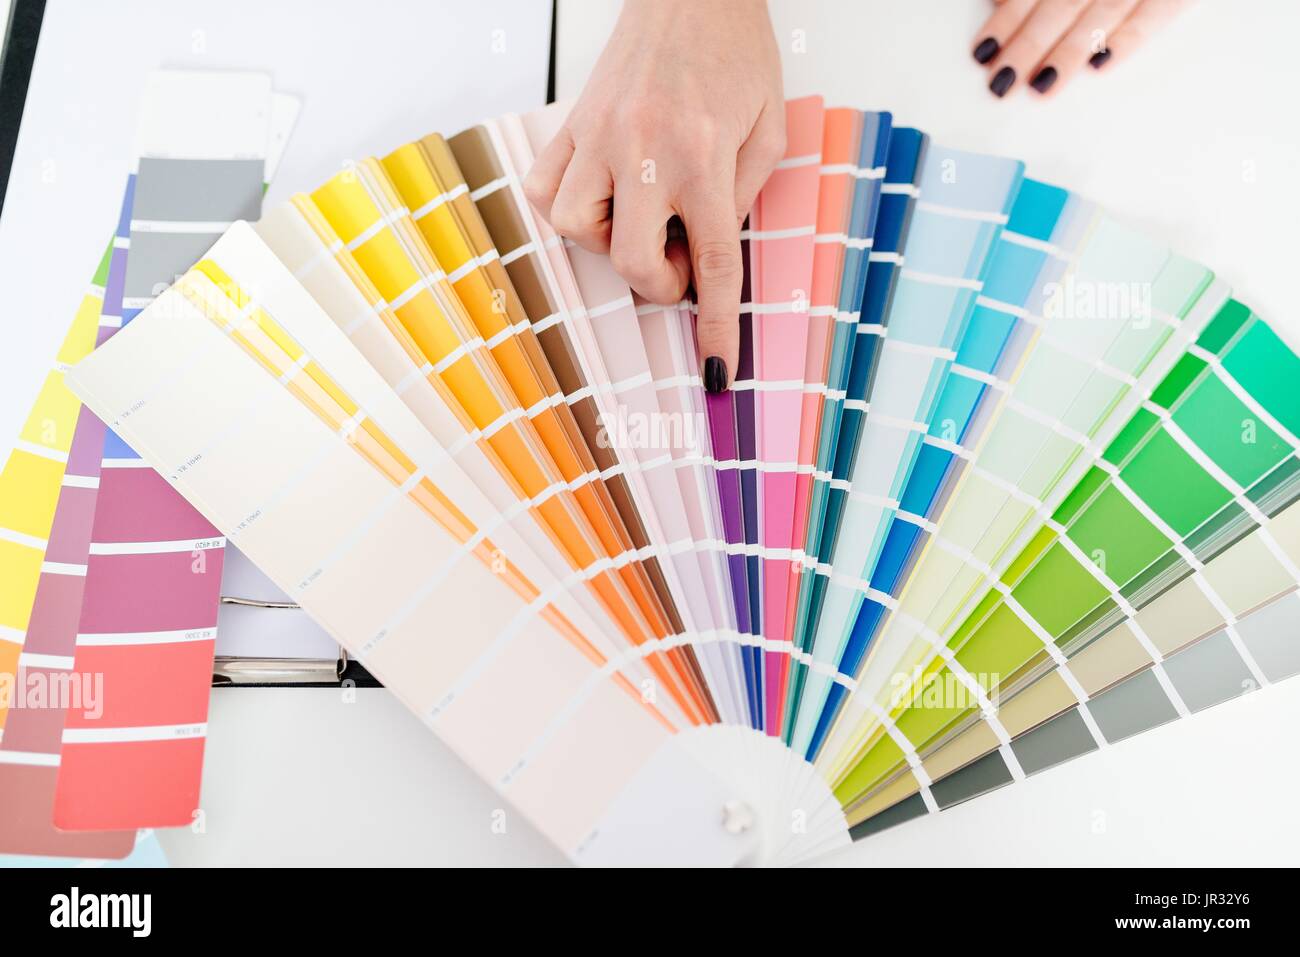 Frau Designer oder Architekten, die Farbe aus der Farbpalette auswählen Stockfoto